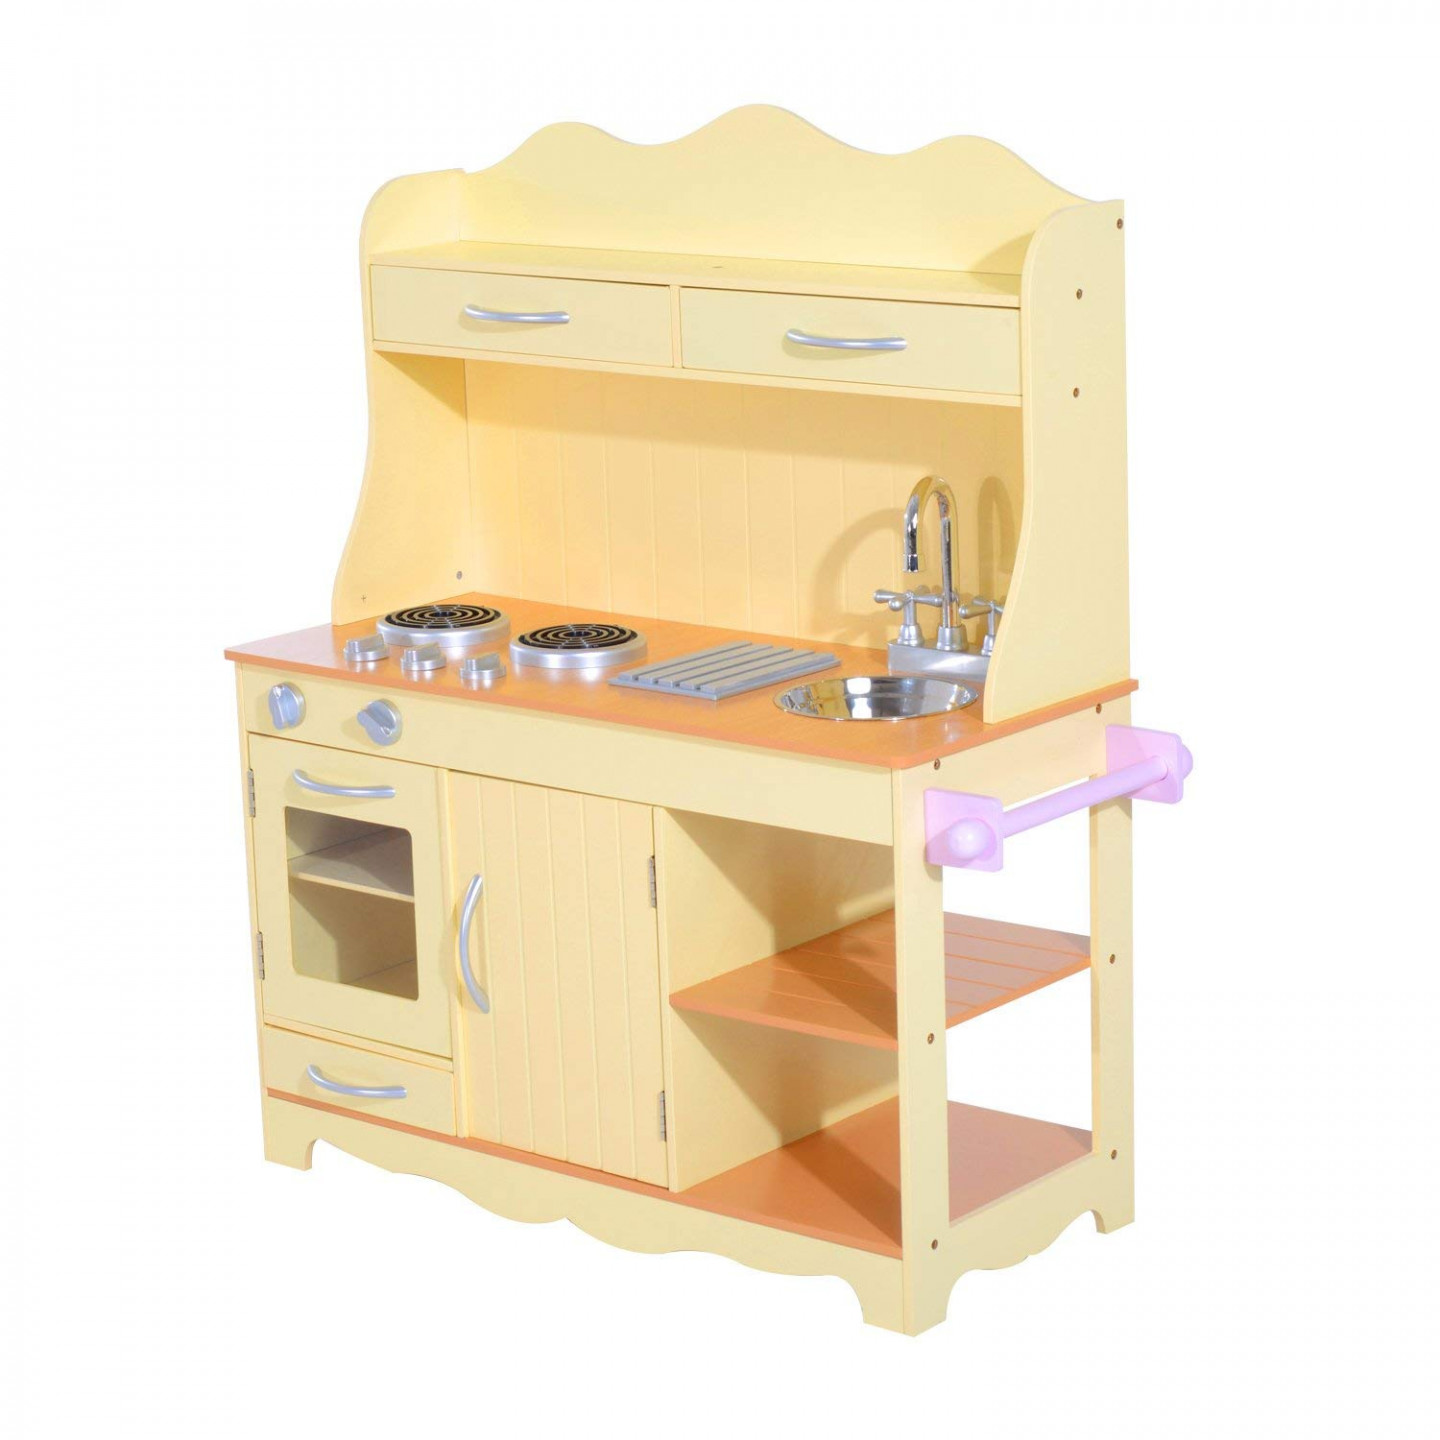 Goleto Dětská dřevěná kuchyňka s příslušenstvím | žlutá